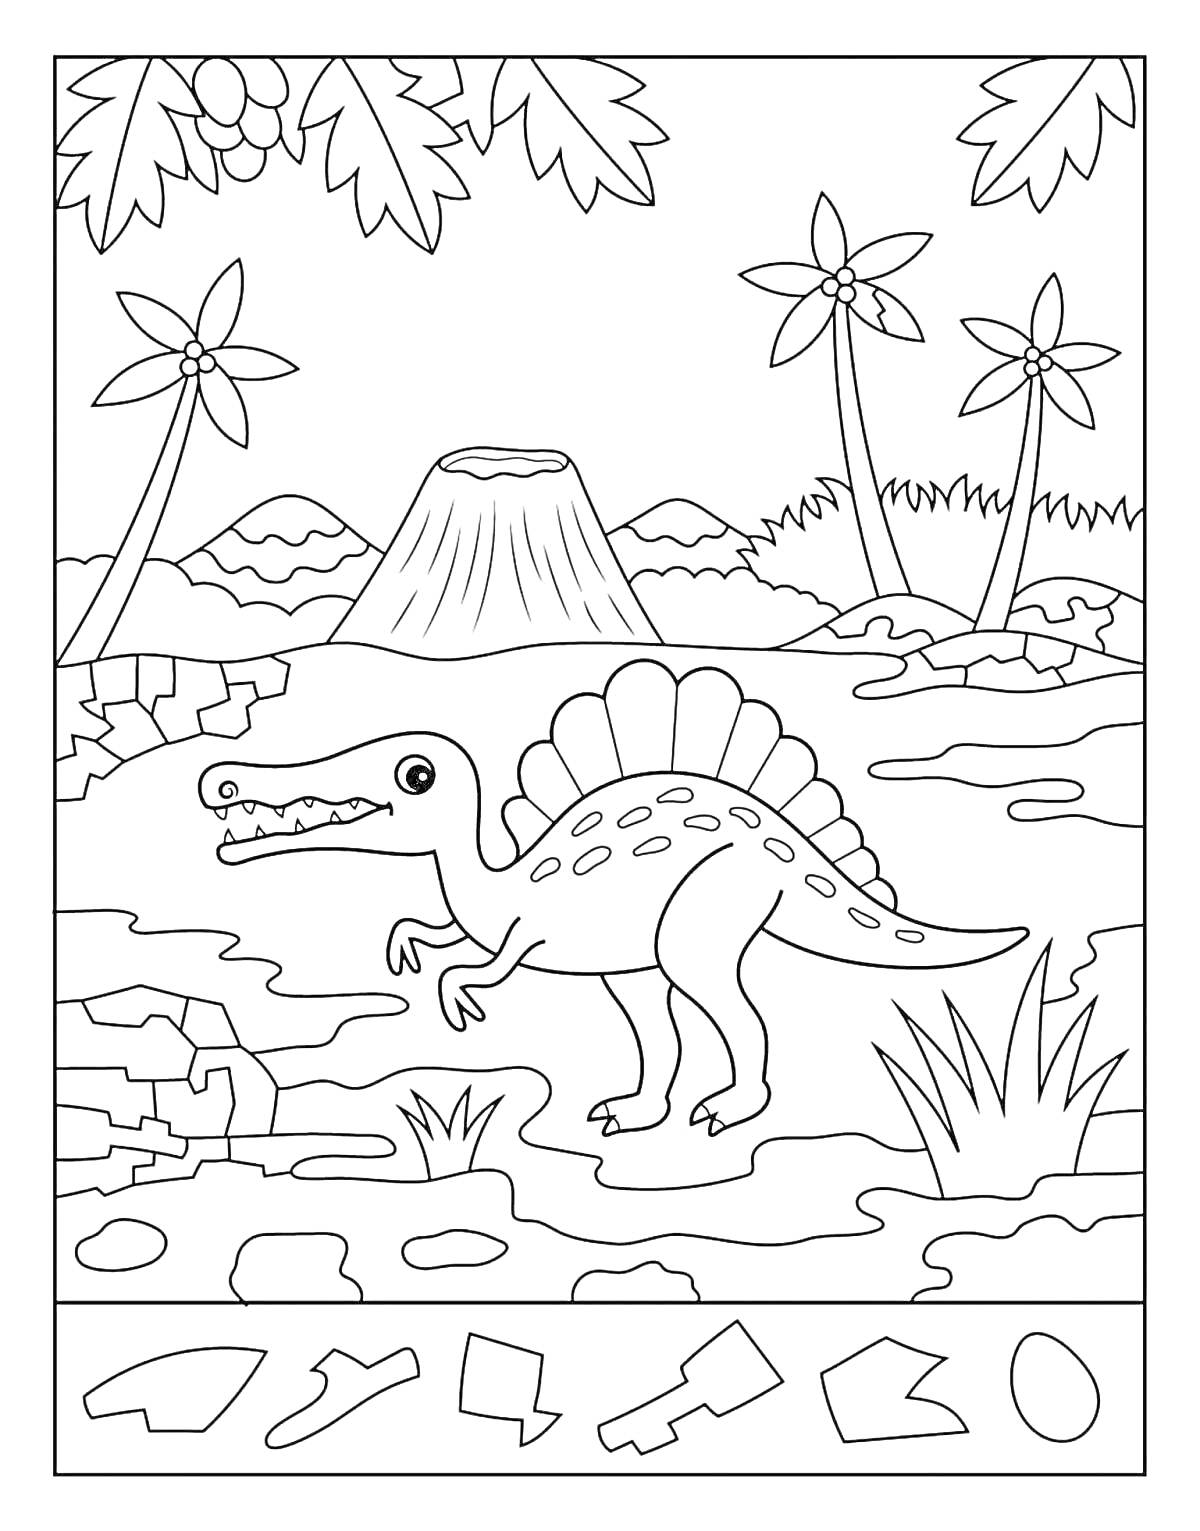 На раскраске изображено: Динозавр, Вулкан, Саванна, Деревья, Птеродактиль, Следы, Яйца, Природа